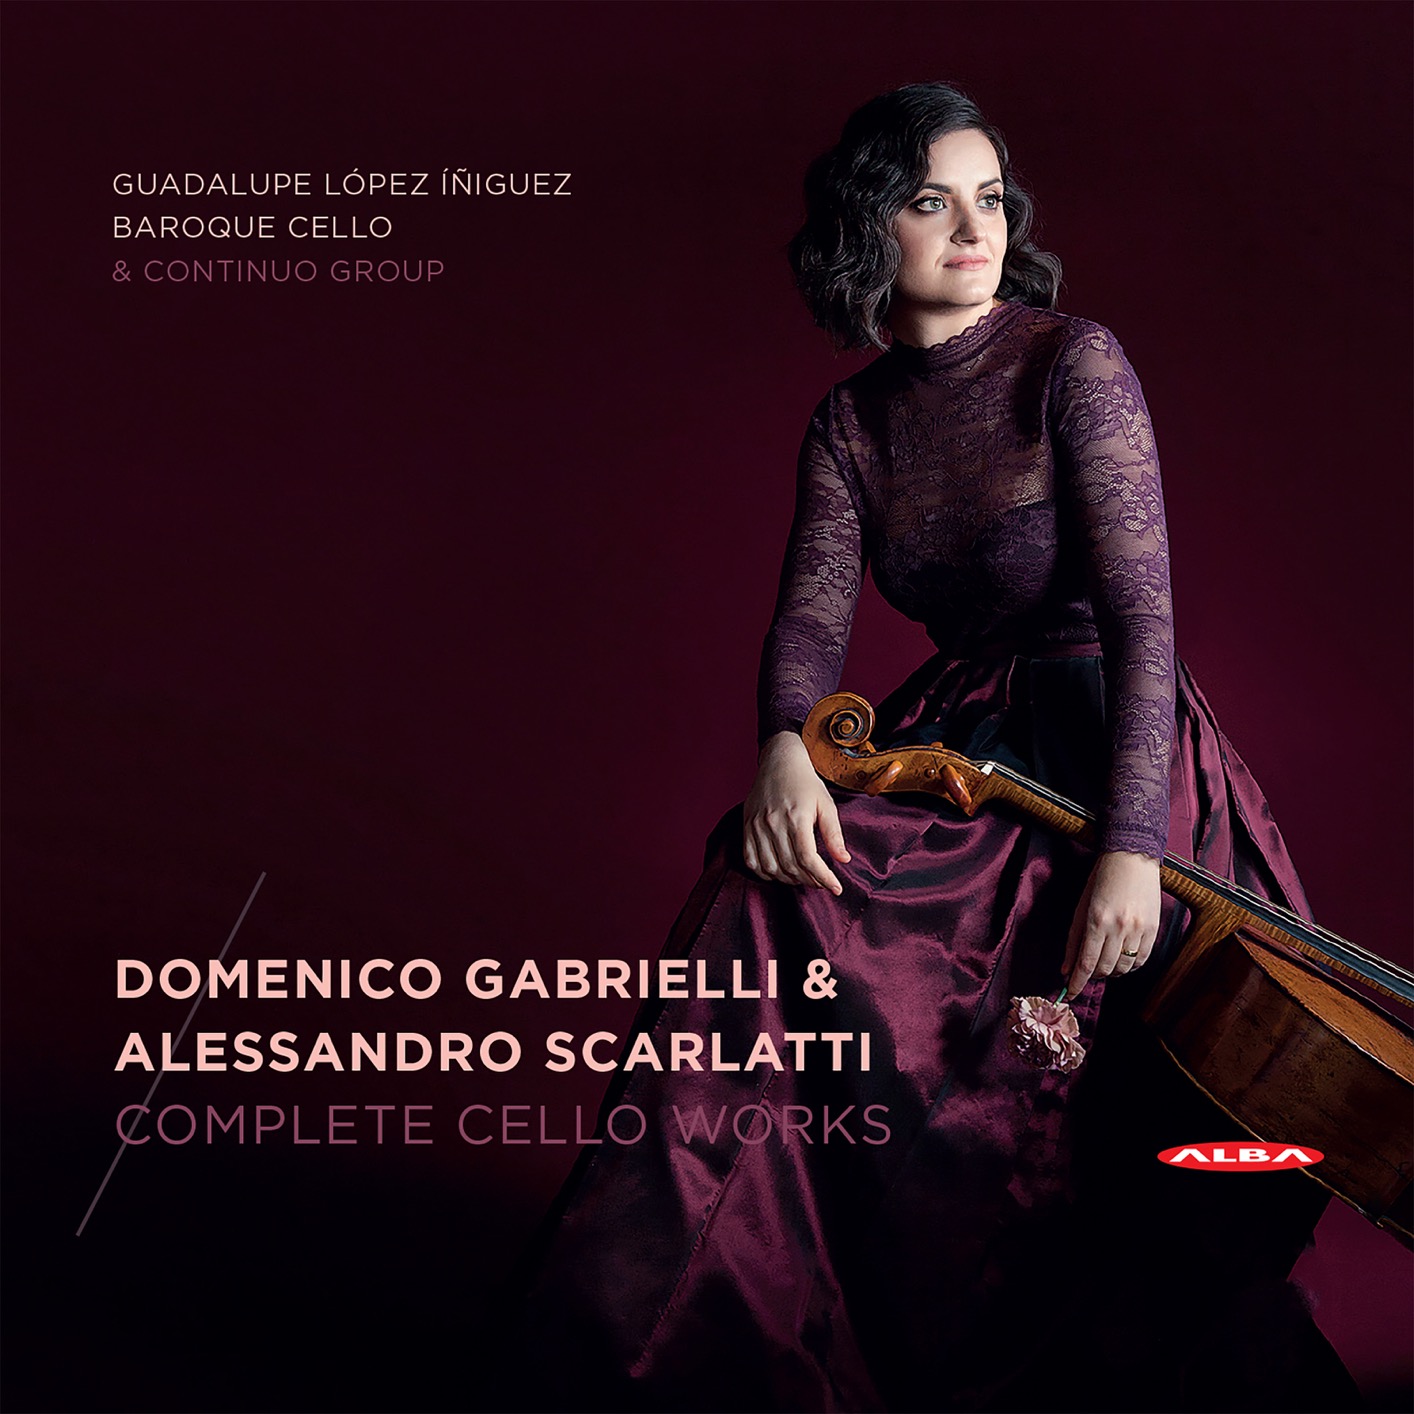 Guadalupe Lopez-Iniguez, Baroque Cello & Continuo Group - Gabrielli & Scarlatti: Complete Cello Works (2018) [FLAC 24bit/96kHz]